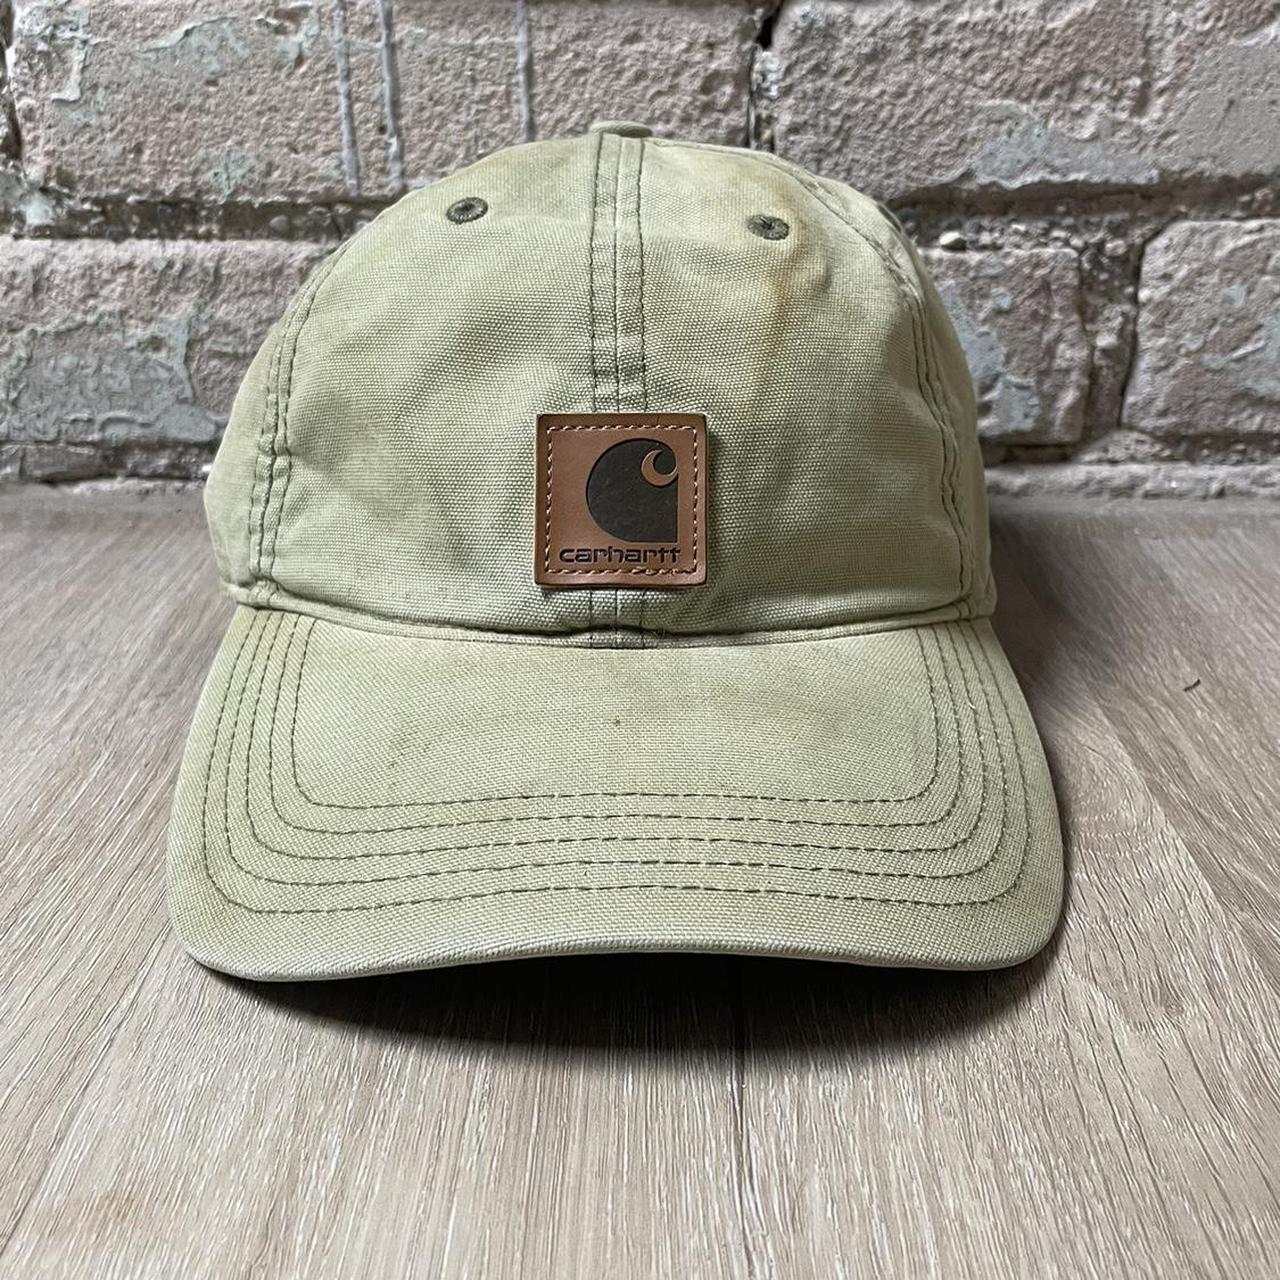 Carhartt duck brown cap Men's / women's khaki y2k - Depop